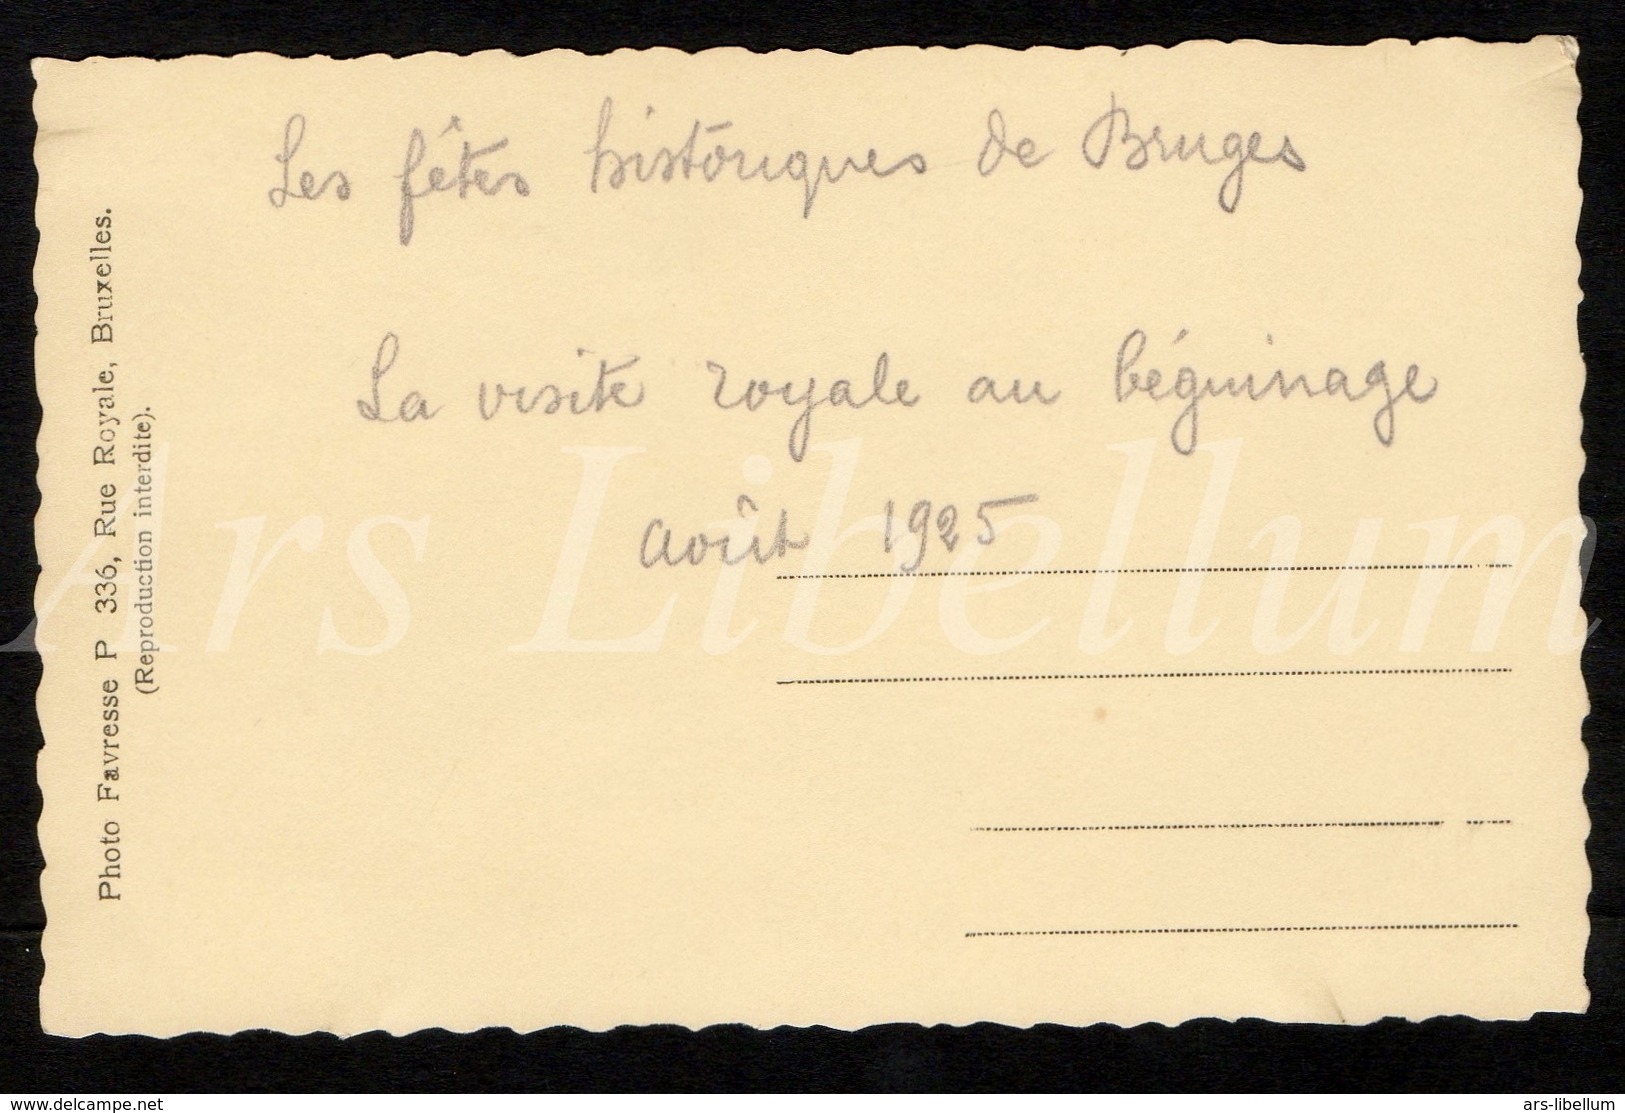 Postcard / CPA / ROYALTY / Belgique / België / Reine Elisabeth / Brugge / 1925 / Photo Favresse / Begijnhof - Brugge